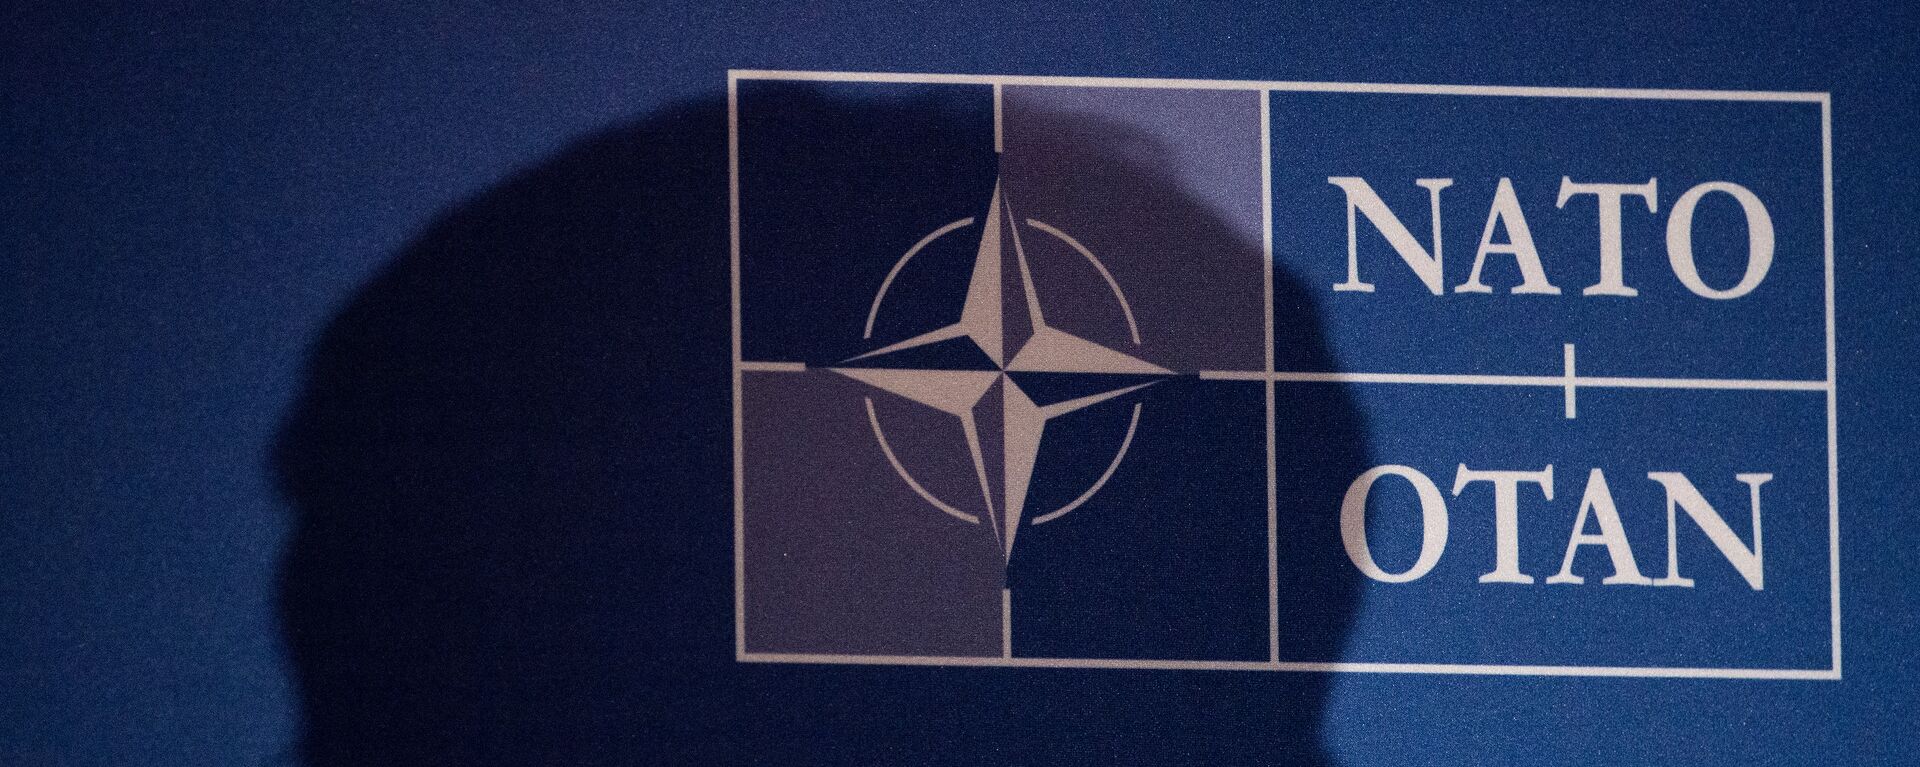 Logo de la OTAN - Sputnik Mundo, 1920, 18.02.2021